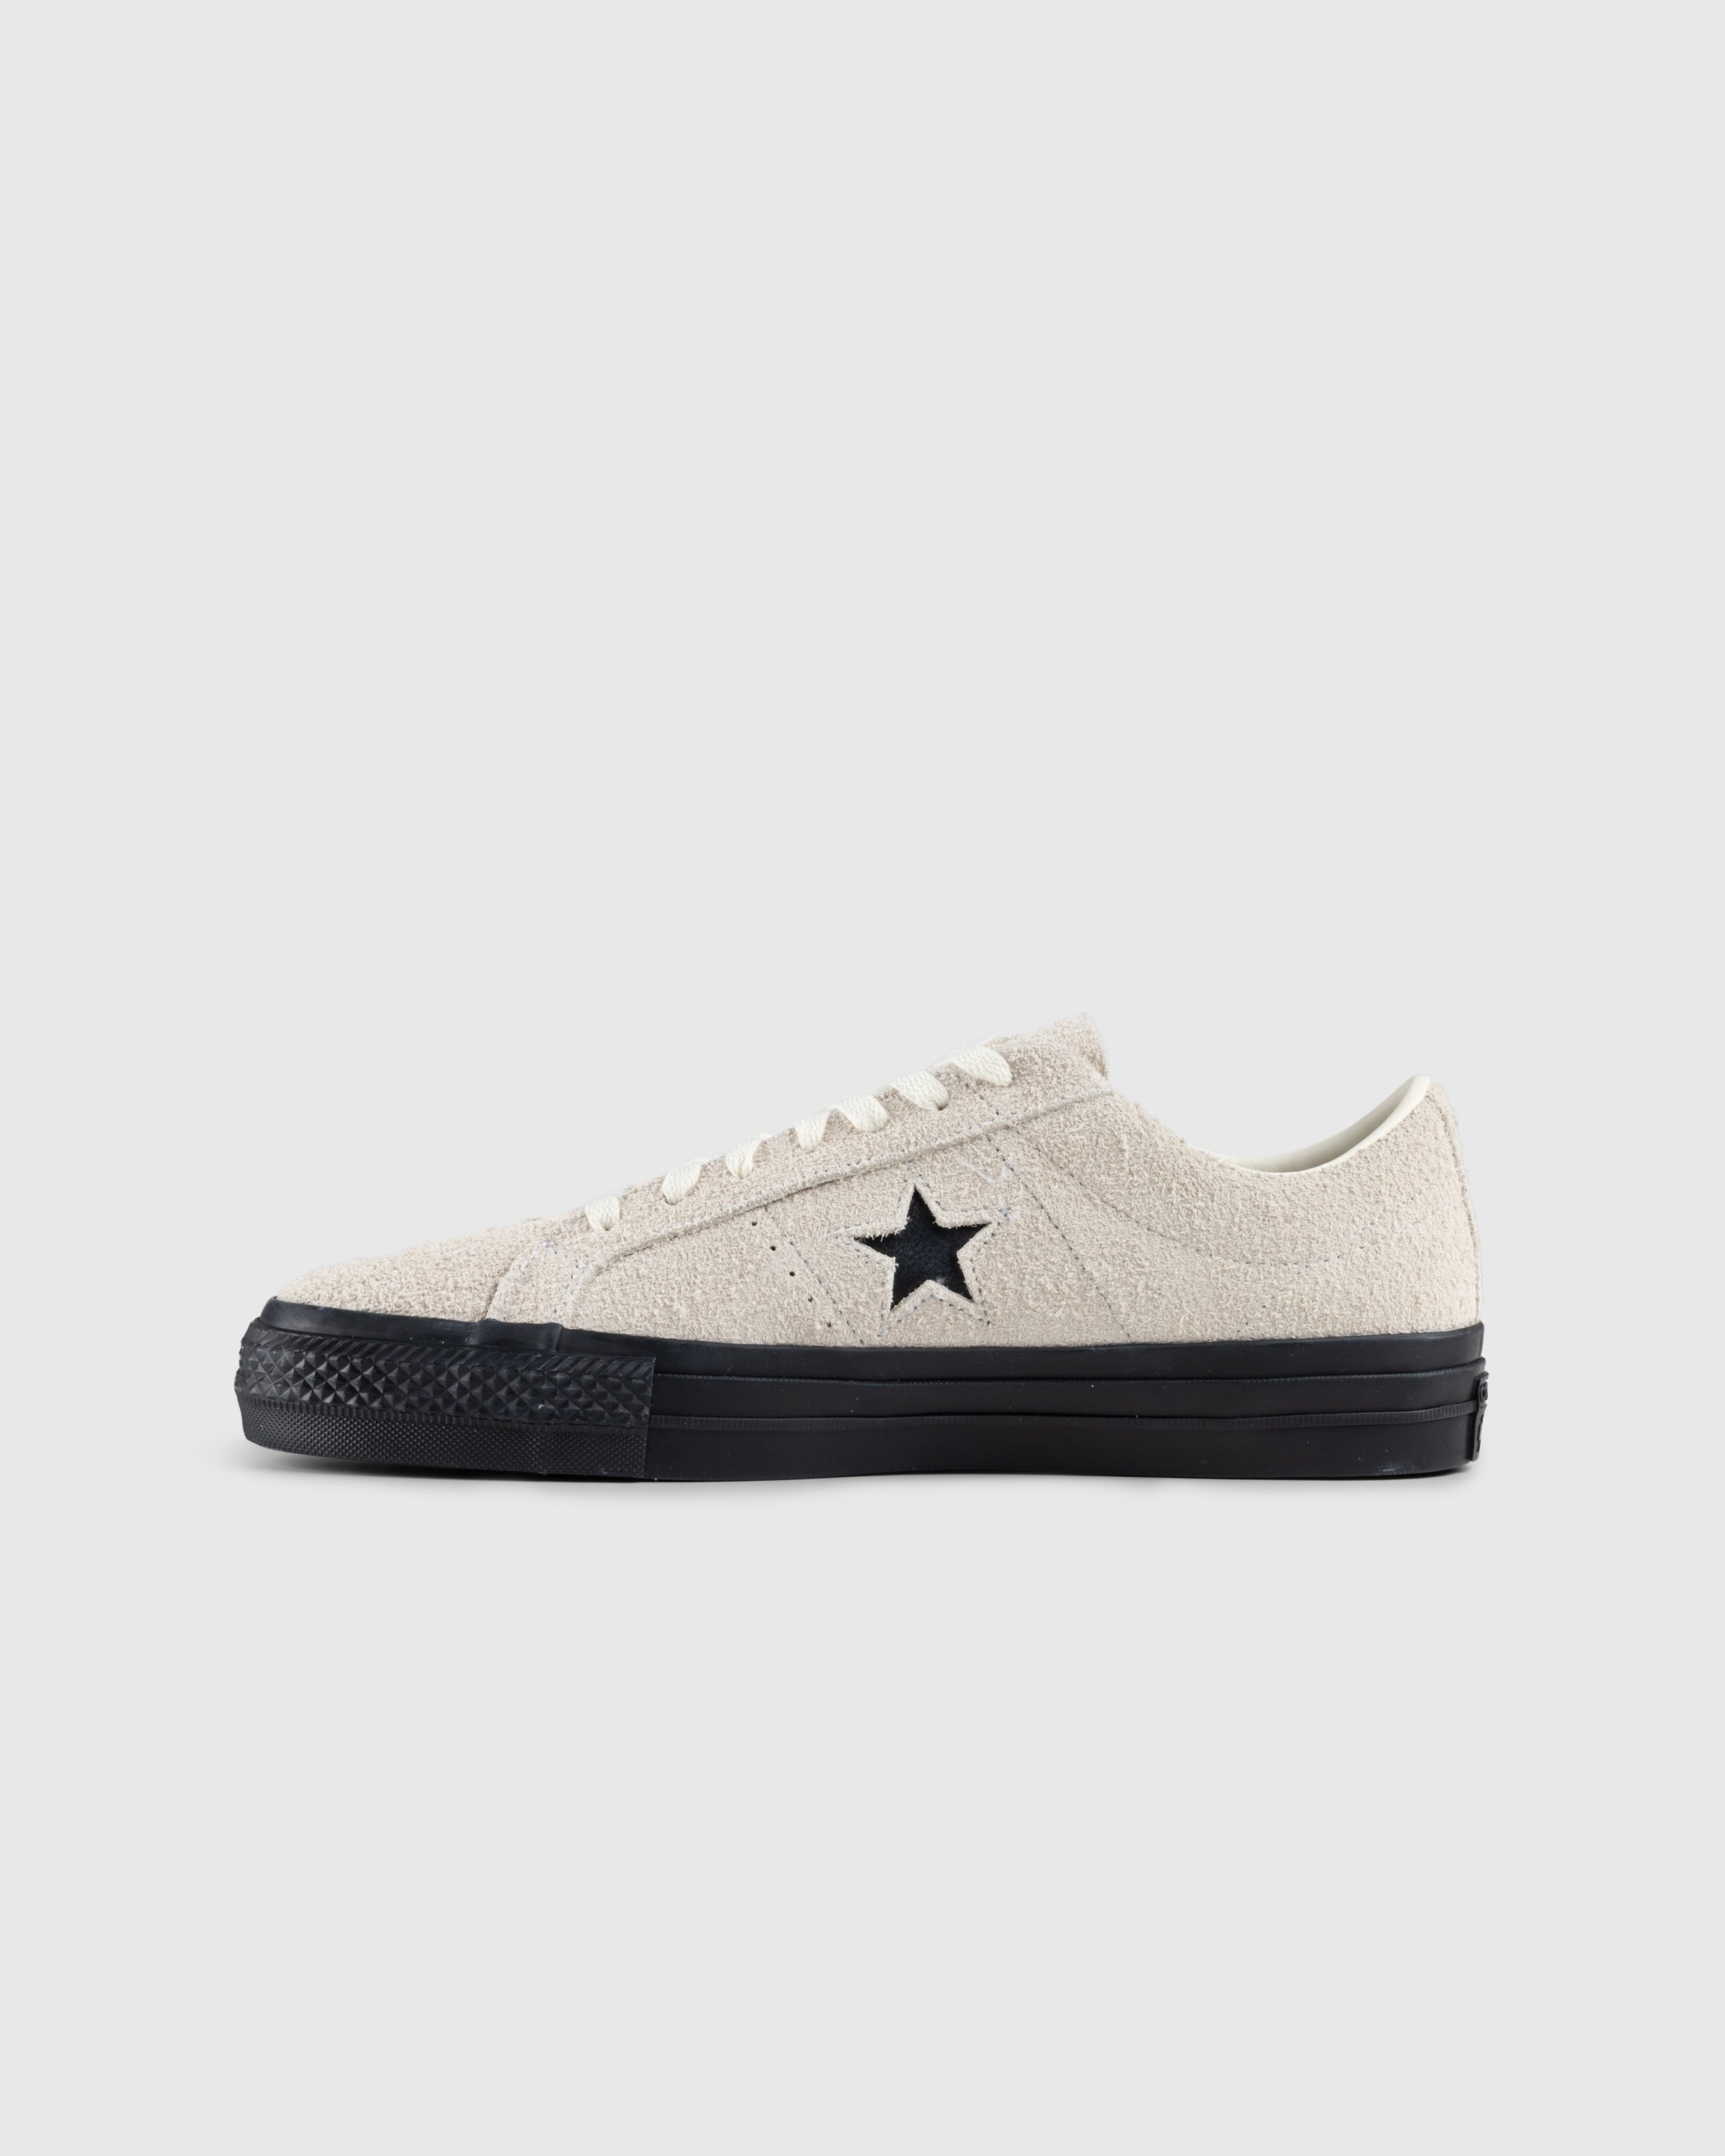 Converse - One Star Pro Ox Egret/Black - Footwear - Beige - Image 2